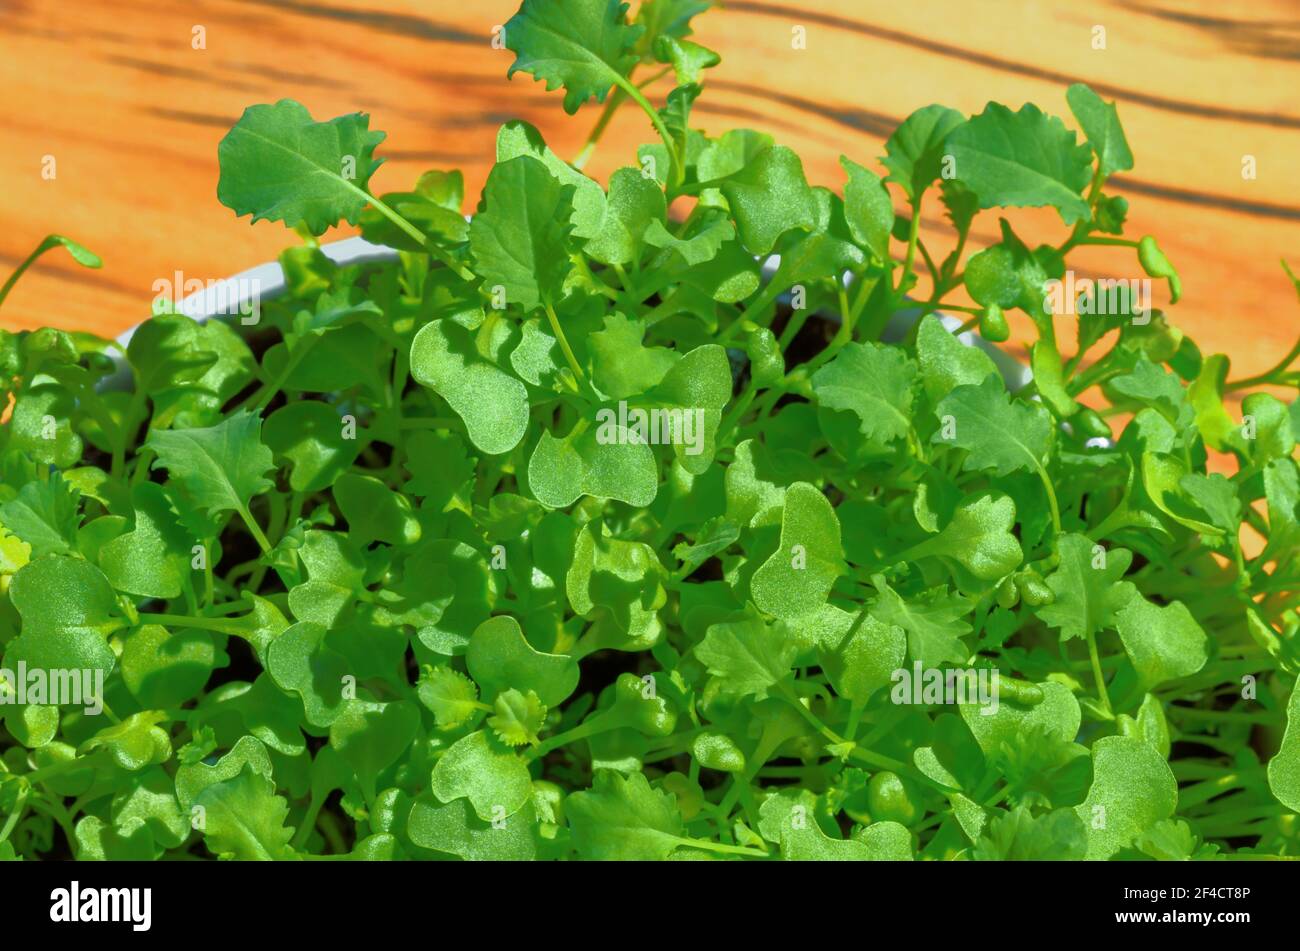 Kale microgreens dans un bol blanc sur bois. Croissance de pousses vertes de chou feuille, de plantules et de jeunes plantes. Feuille de chou frisé germé. Banque D'Images